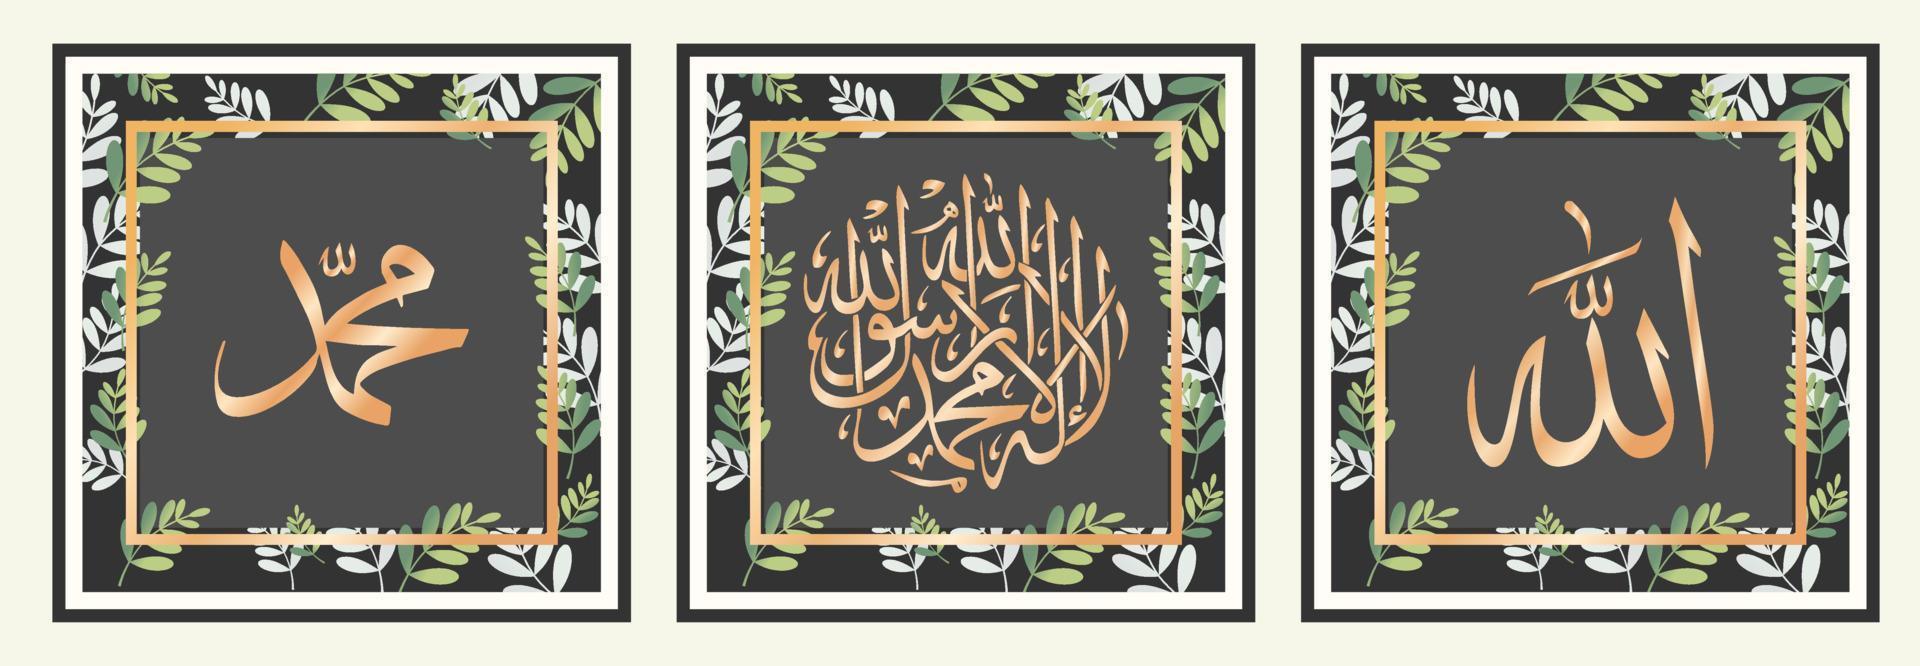 décoration murale calligraphie islamique vecteur